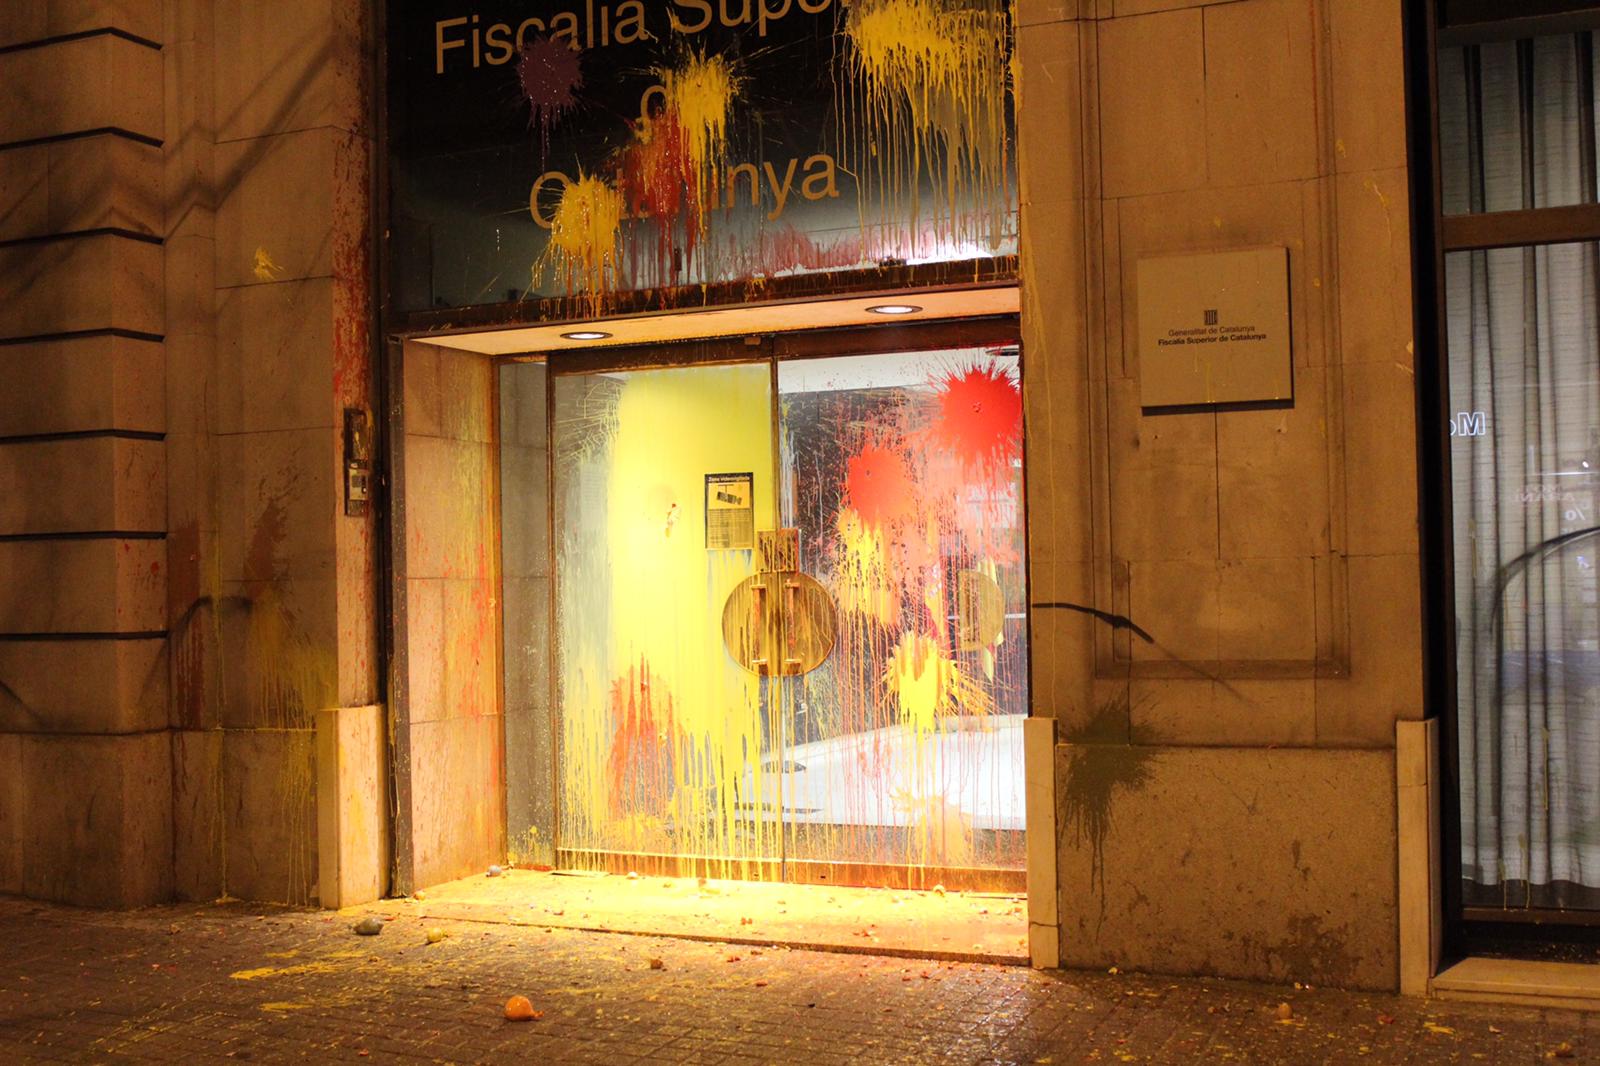 La Fiscalía General del Estado condena "el ataque" a la sede de Barcelona